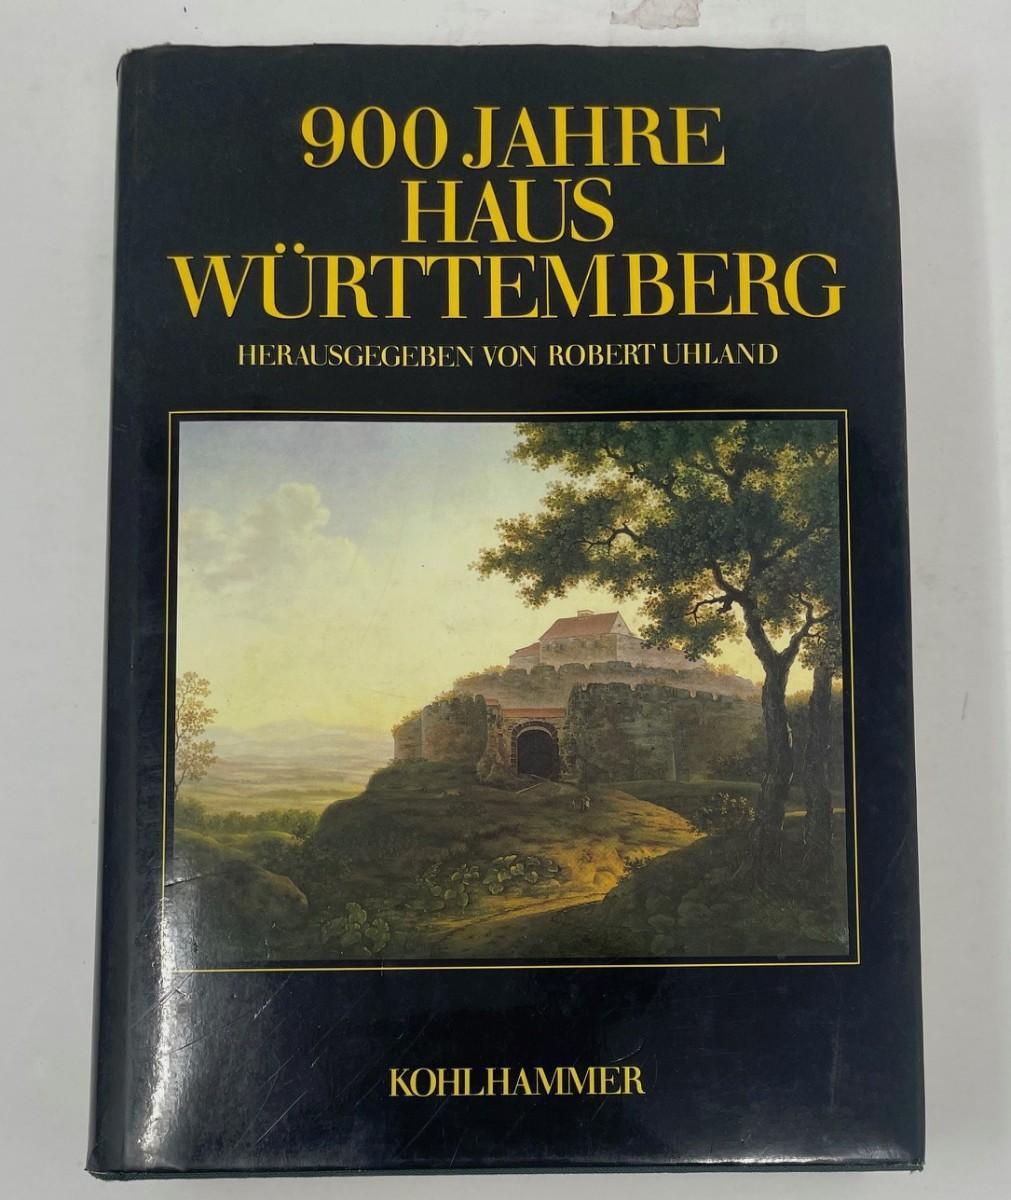 Photo 1 of Book "900 Jahre Hus Wurttemberg Herausgegeben Von Robert Uhland" by Kohl Hammer